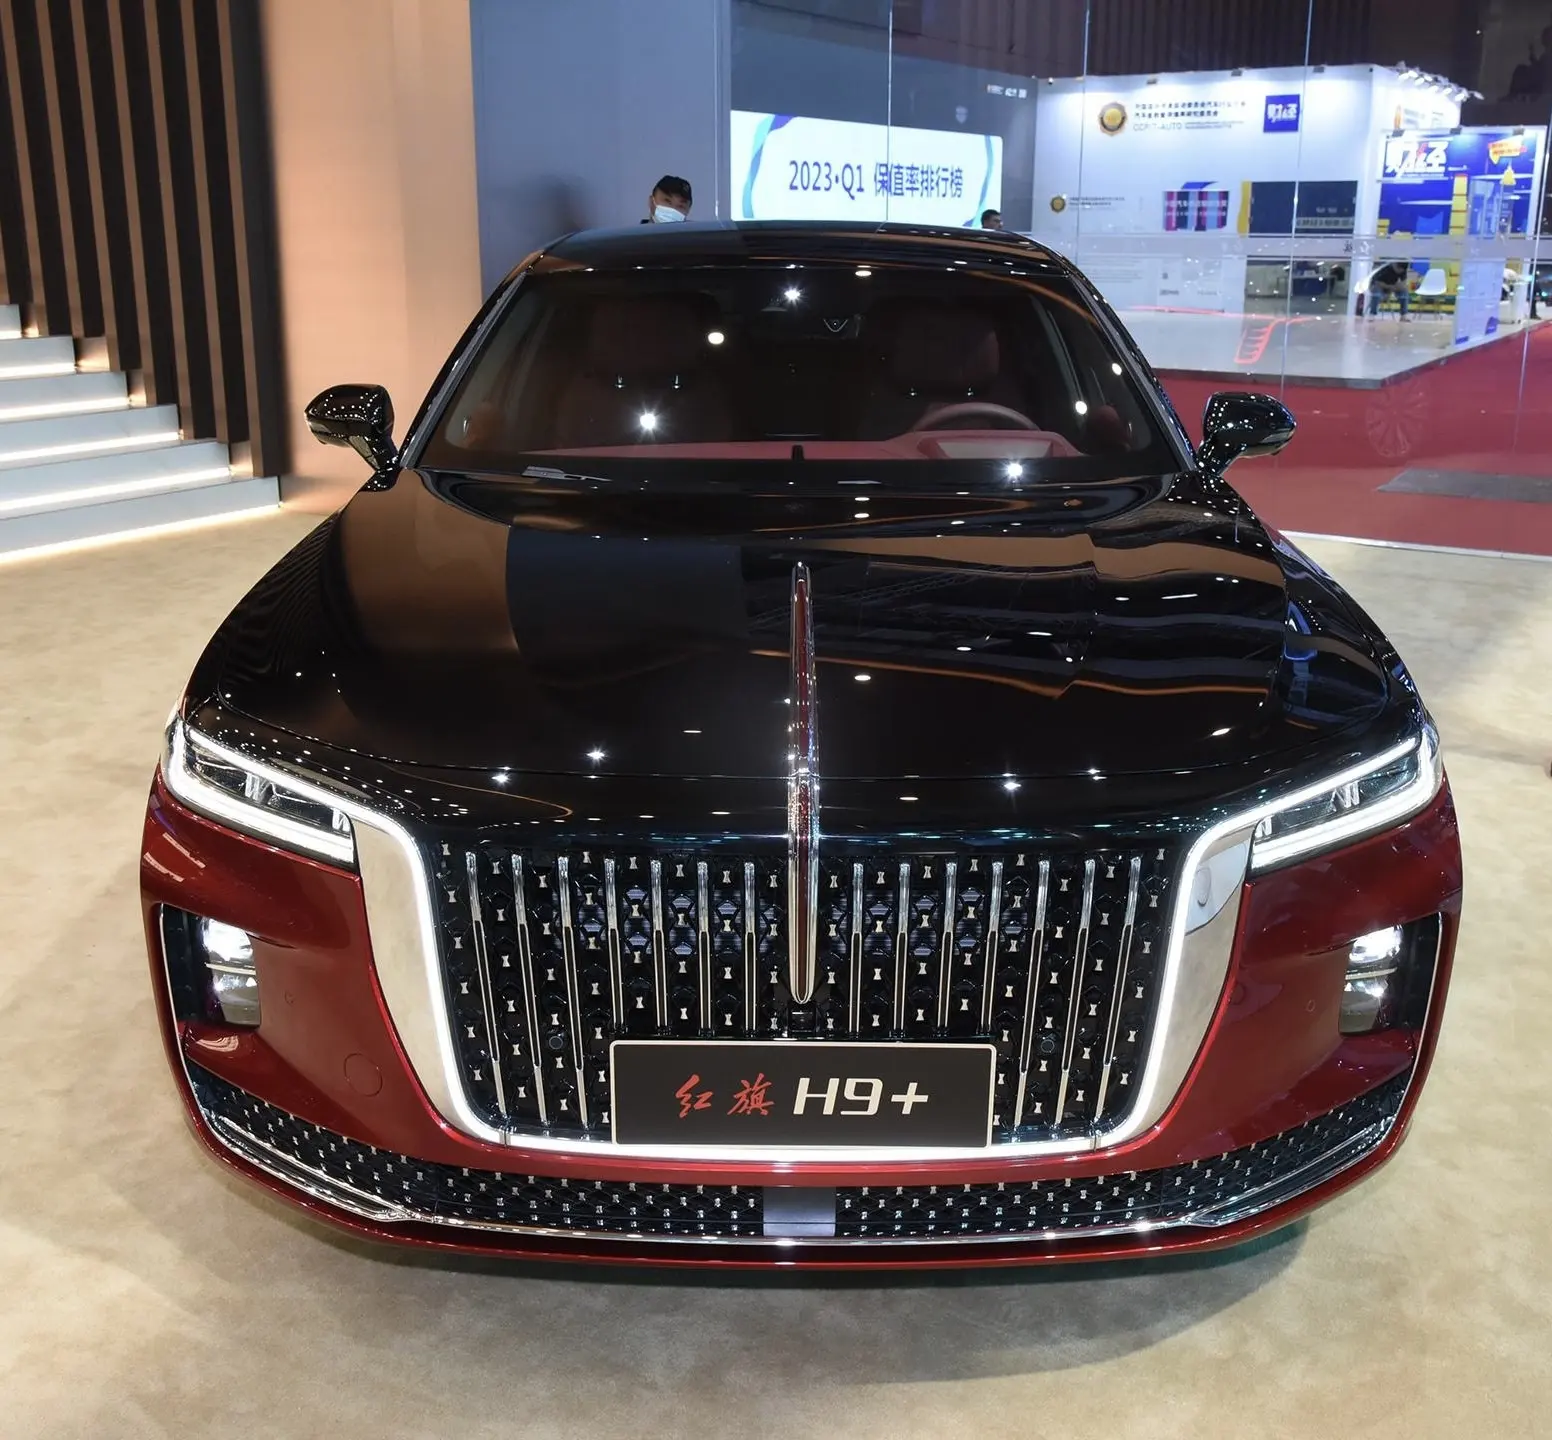 2022 2023 Trung Quốc faw hongqi H9 xe hơi sang trọng Hybrid xe 252 mã lực 2.0T tiết kiệm nhiên liệu không gian kinh doanh nóng bán.